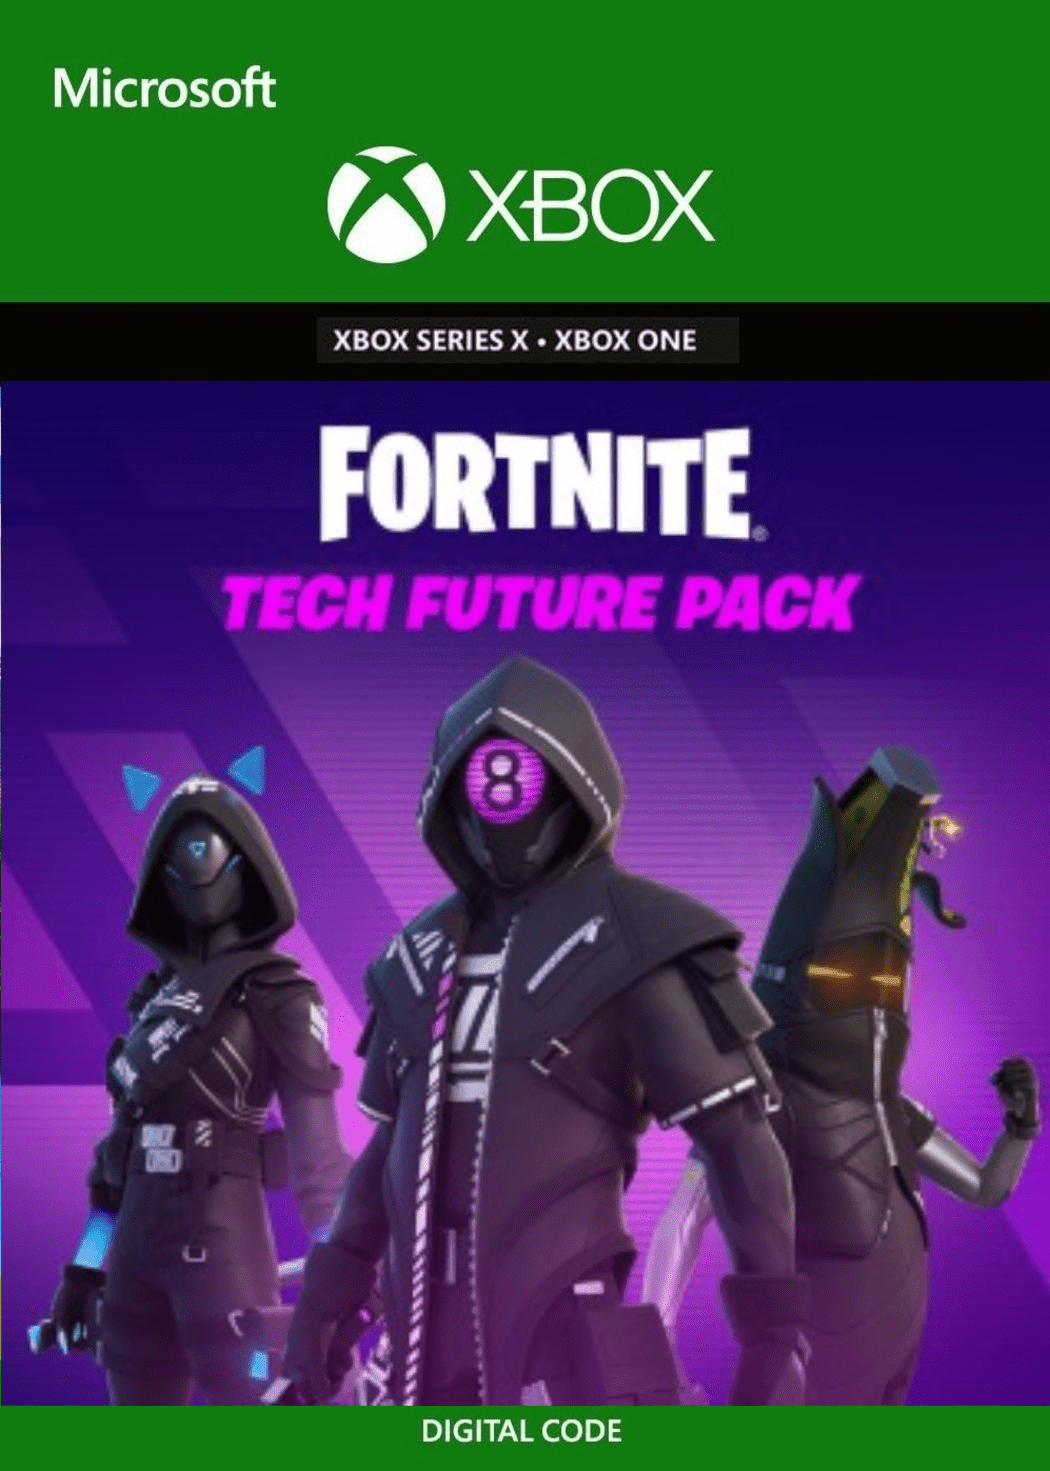 Fortnite: Tech Future Pack - Xbox - EXON - גיימינג ותוכנות - משחקים ותוכנות למחשב ולאקס בוקס!